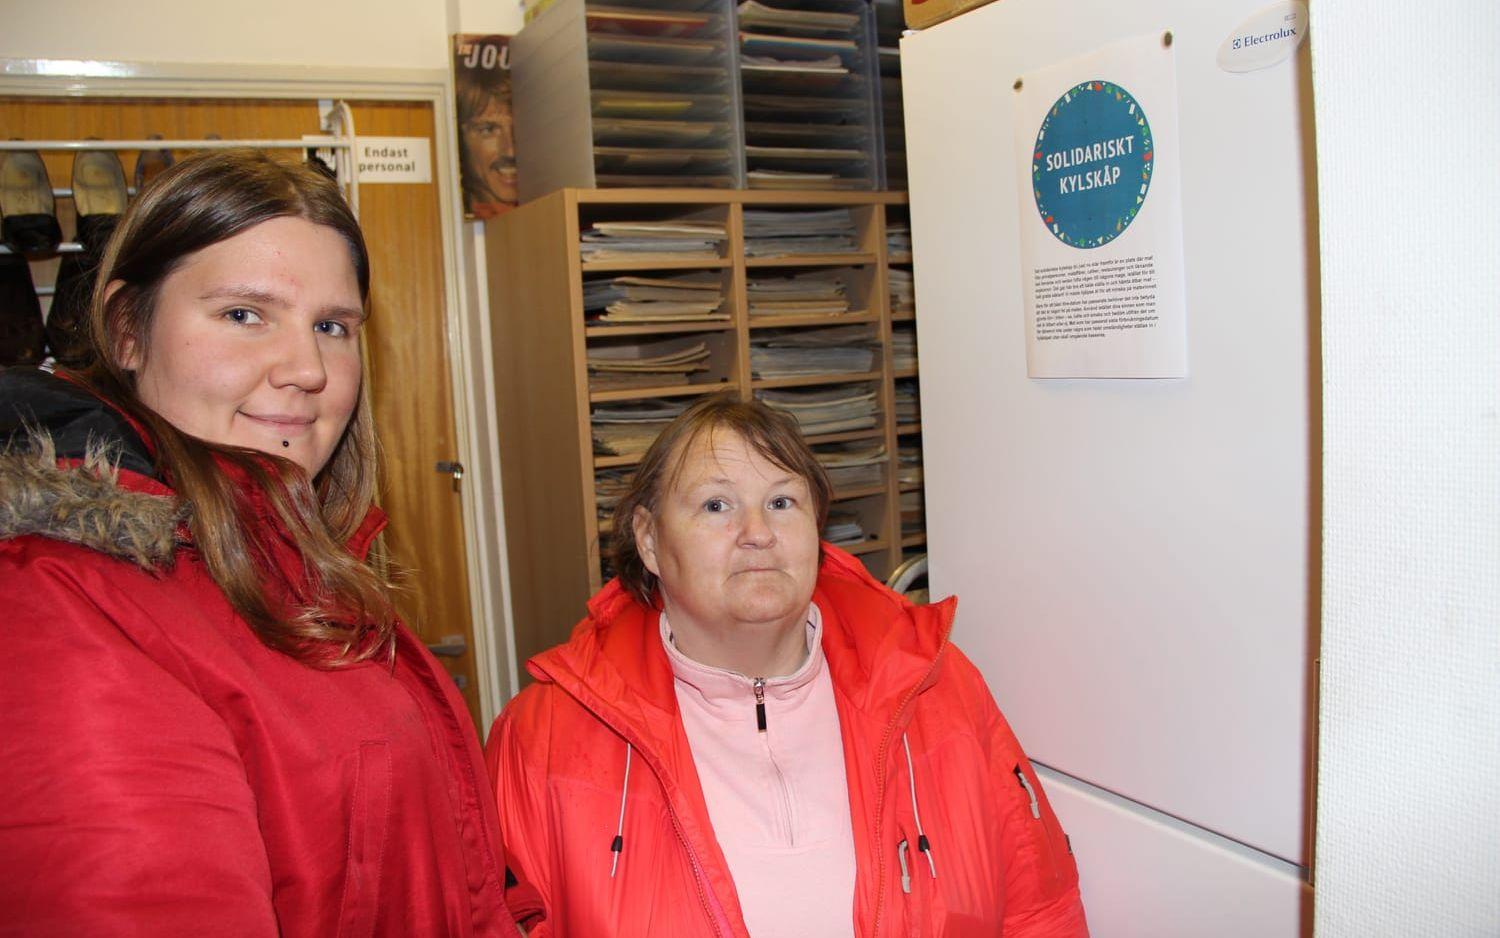 Mikaela Olsson och Lotta Hermansson tycker mycket om det solidariska kylskåpet i Mölndal. Bild: Lars Aronsson